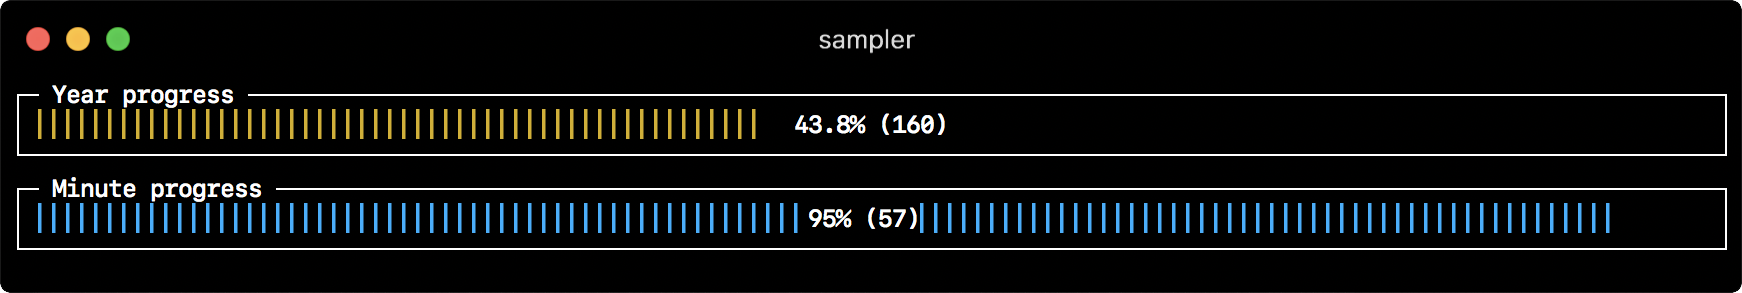 Sampler. Консольная утилита для визуализации результата любых shell команд - 5